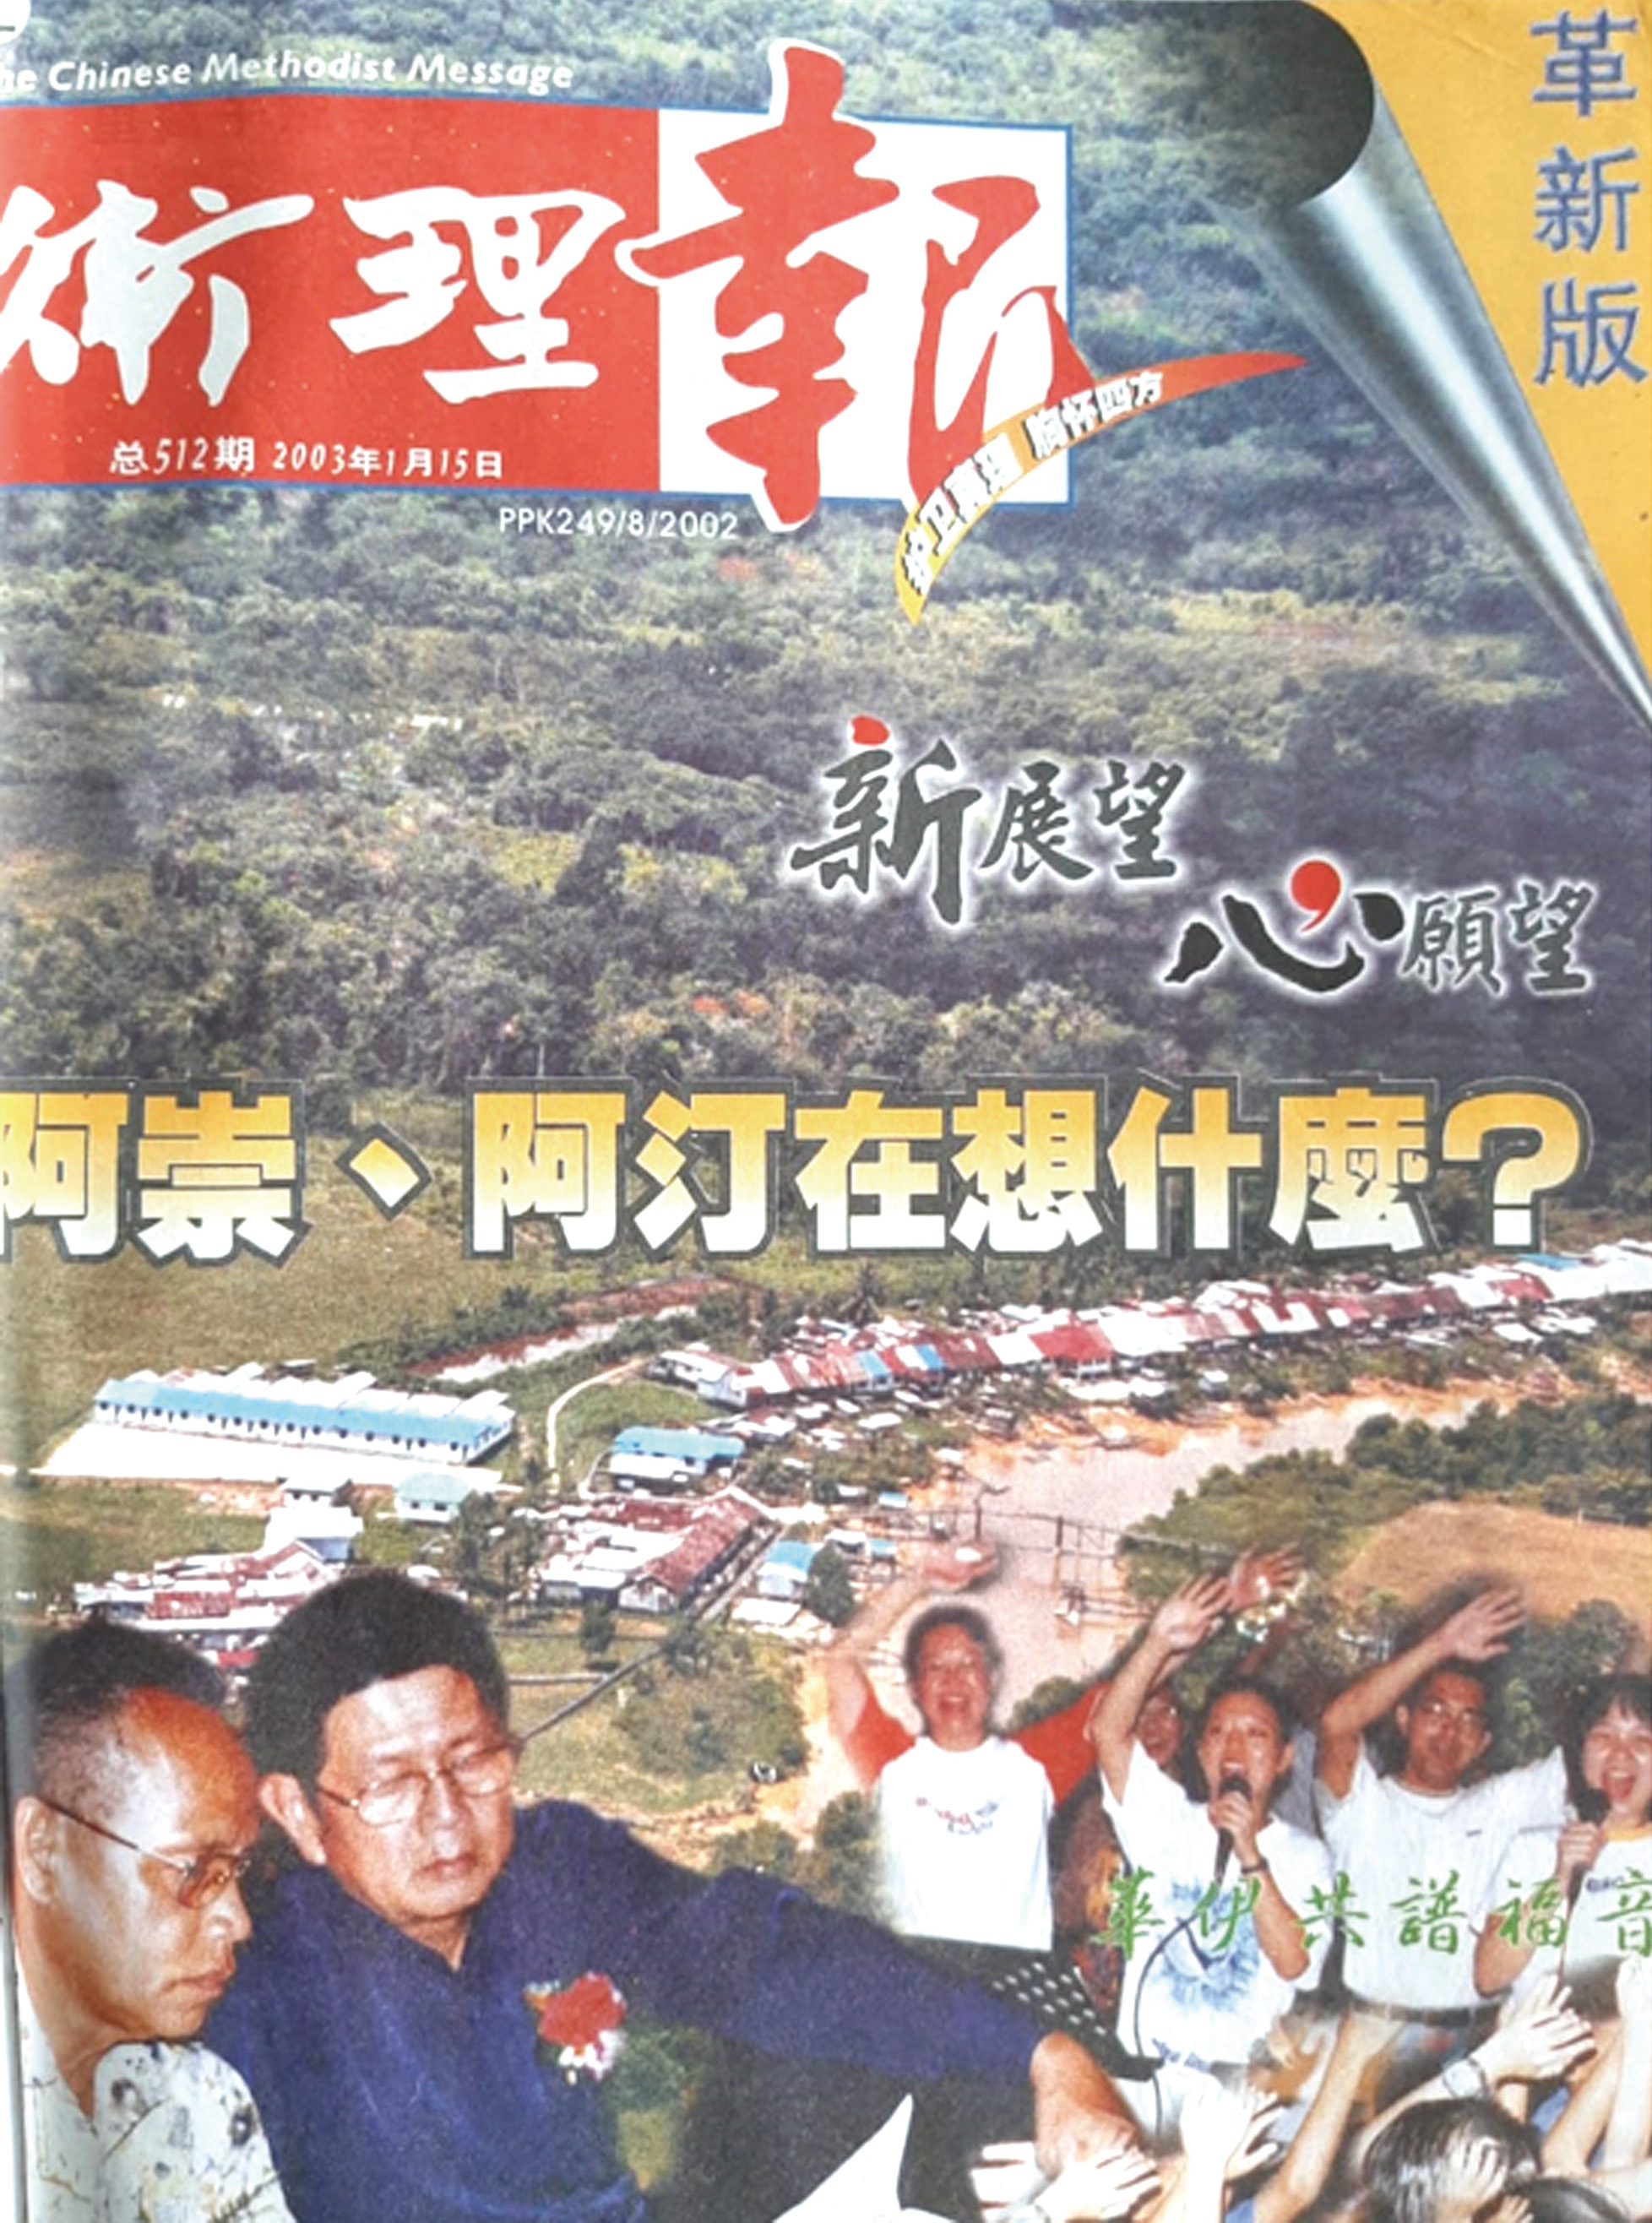 《衛理報》於2003年改版為雜誌型。